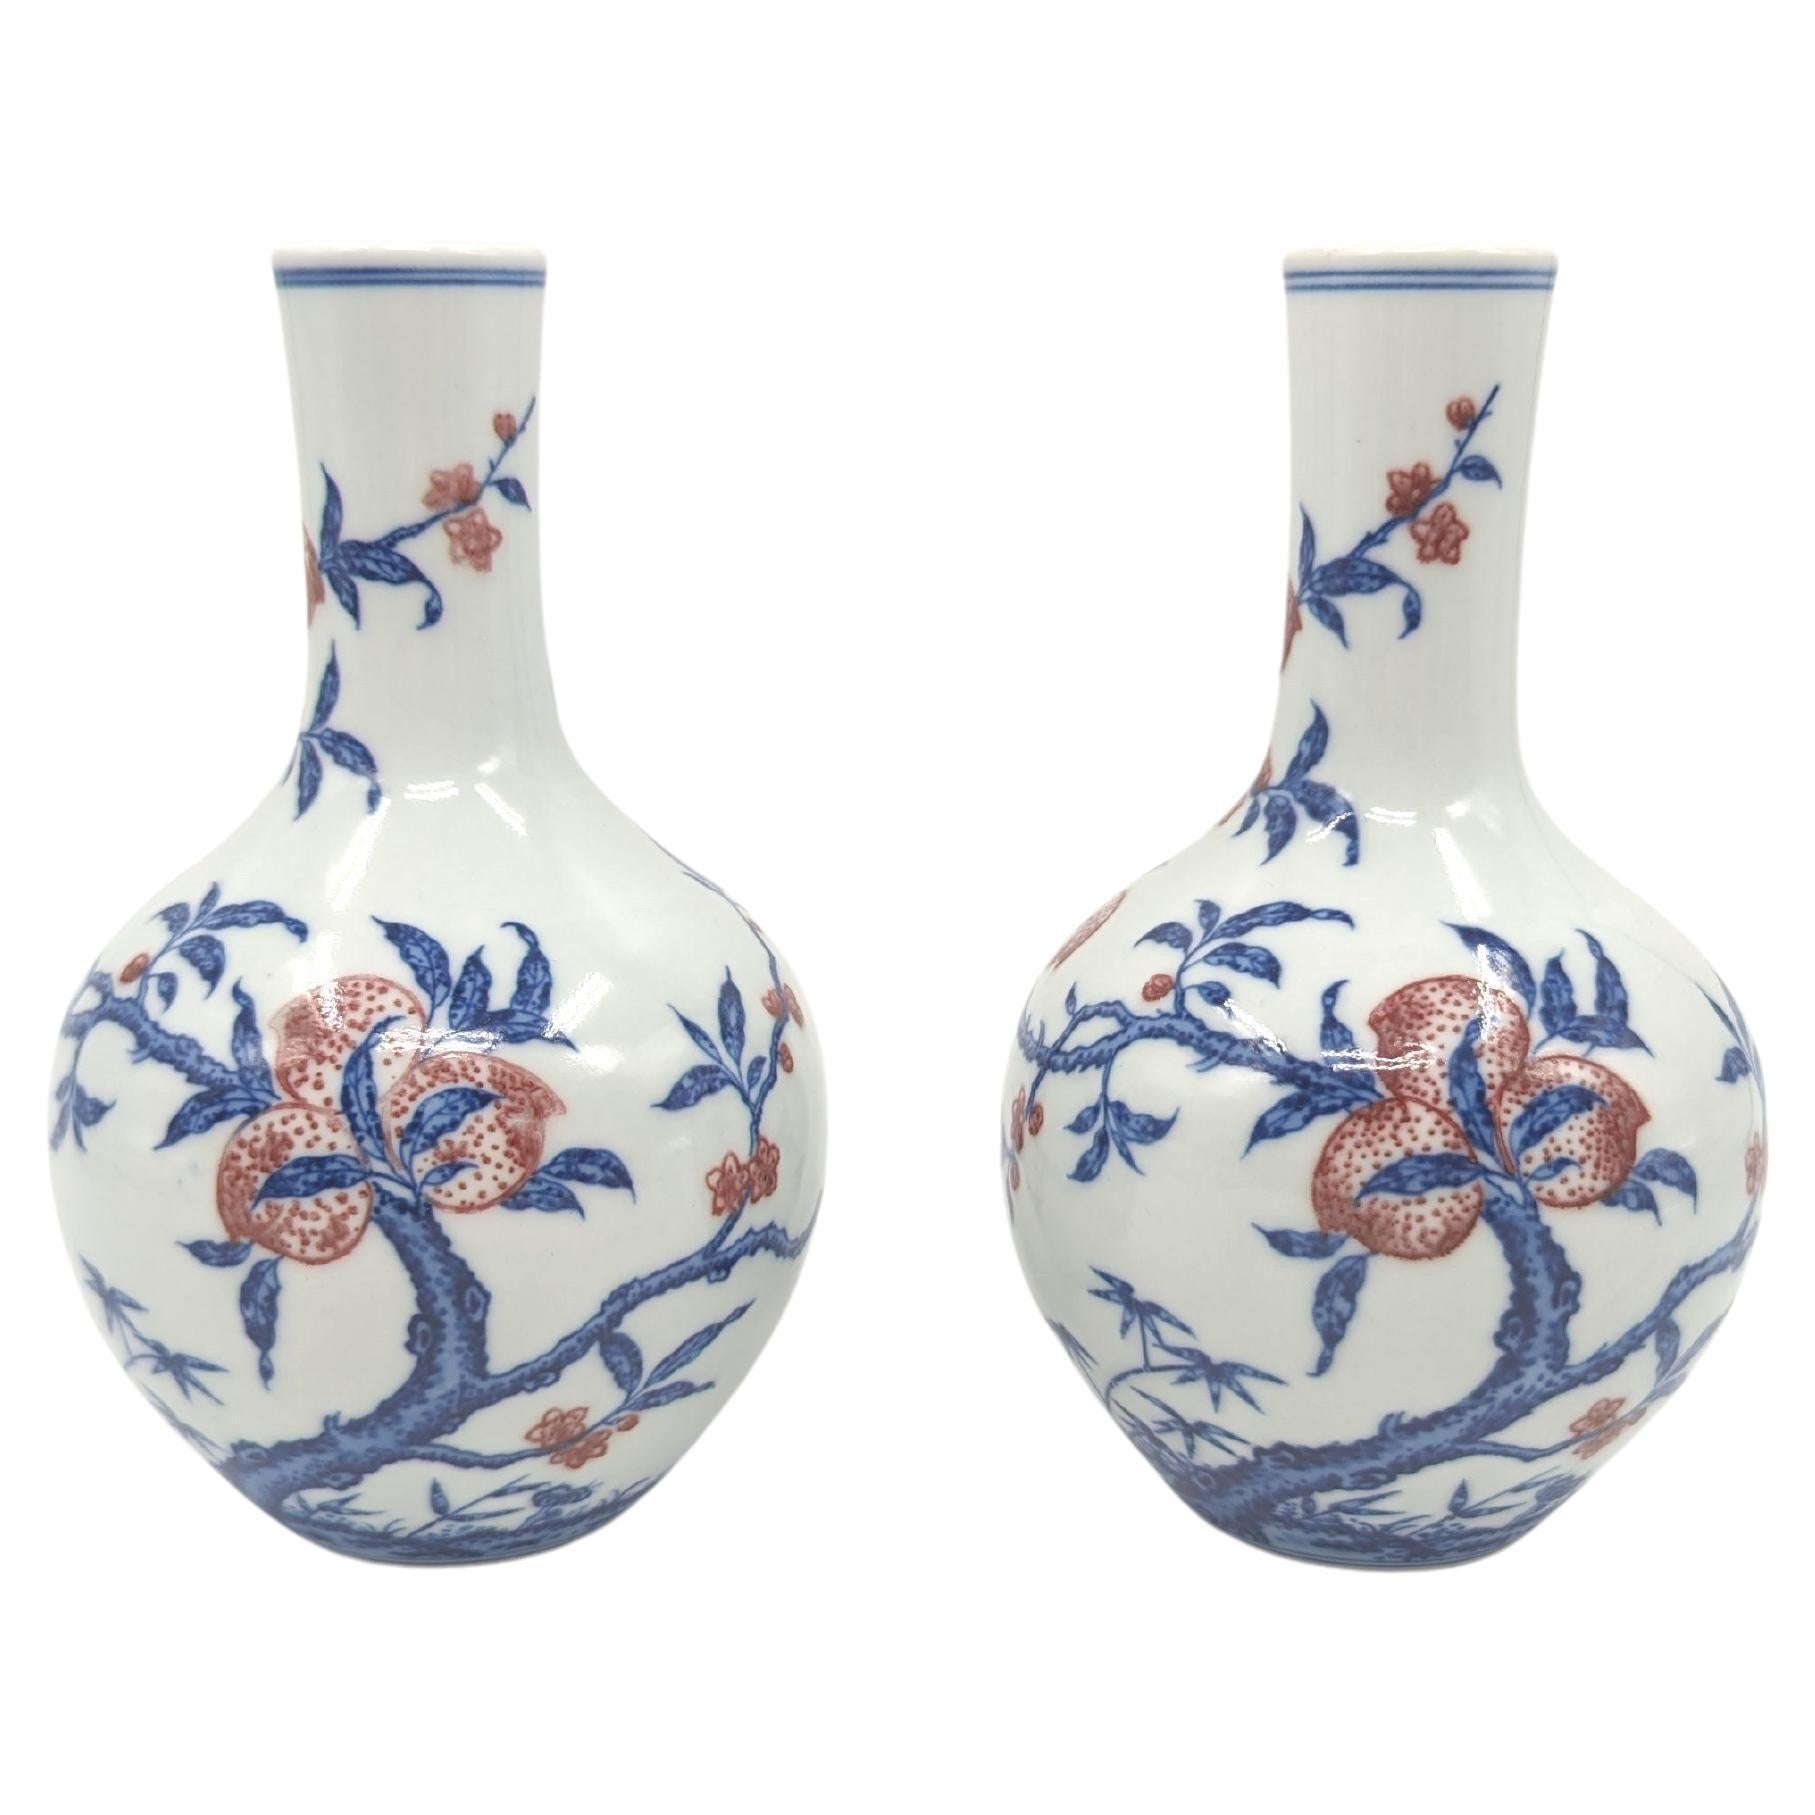 Wir präsentieren Ihnen ein bemerkenswertes Paar Flaschenvasen aus chinesischem Porzellan, eine wahre Verkörperung der Finesse und Kunstfertigkeit, die das chinesische Porzellanhandwerk auszeichnet. Diese Vasen sind sehr gut getöpfert und mit